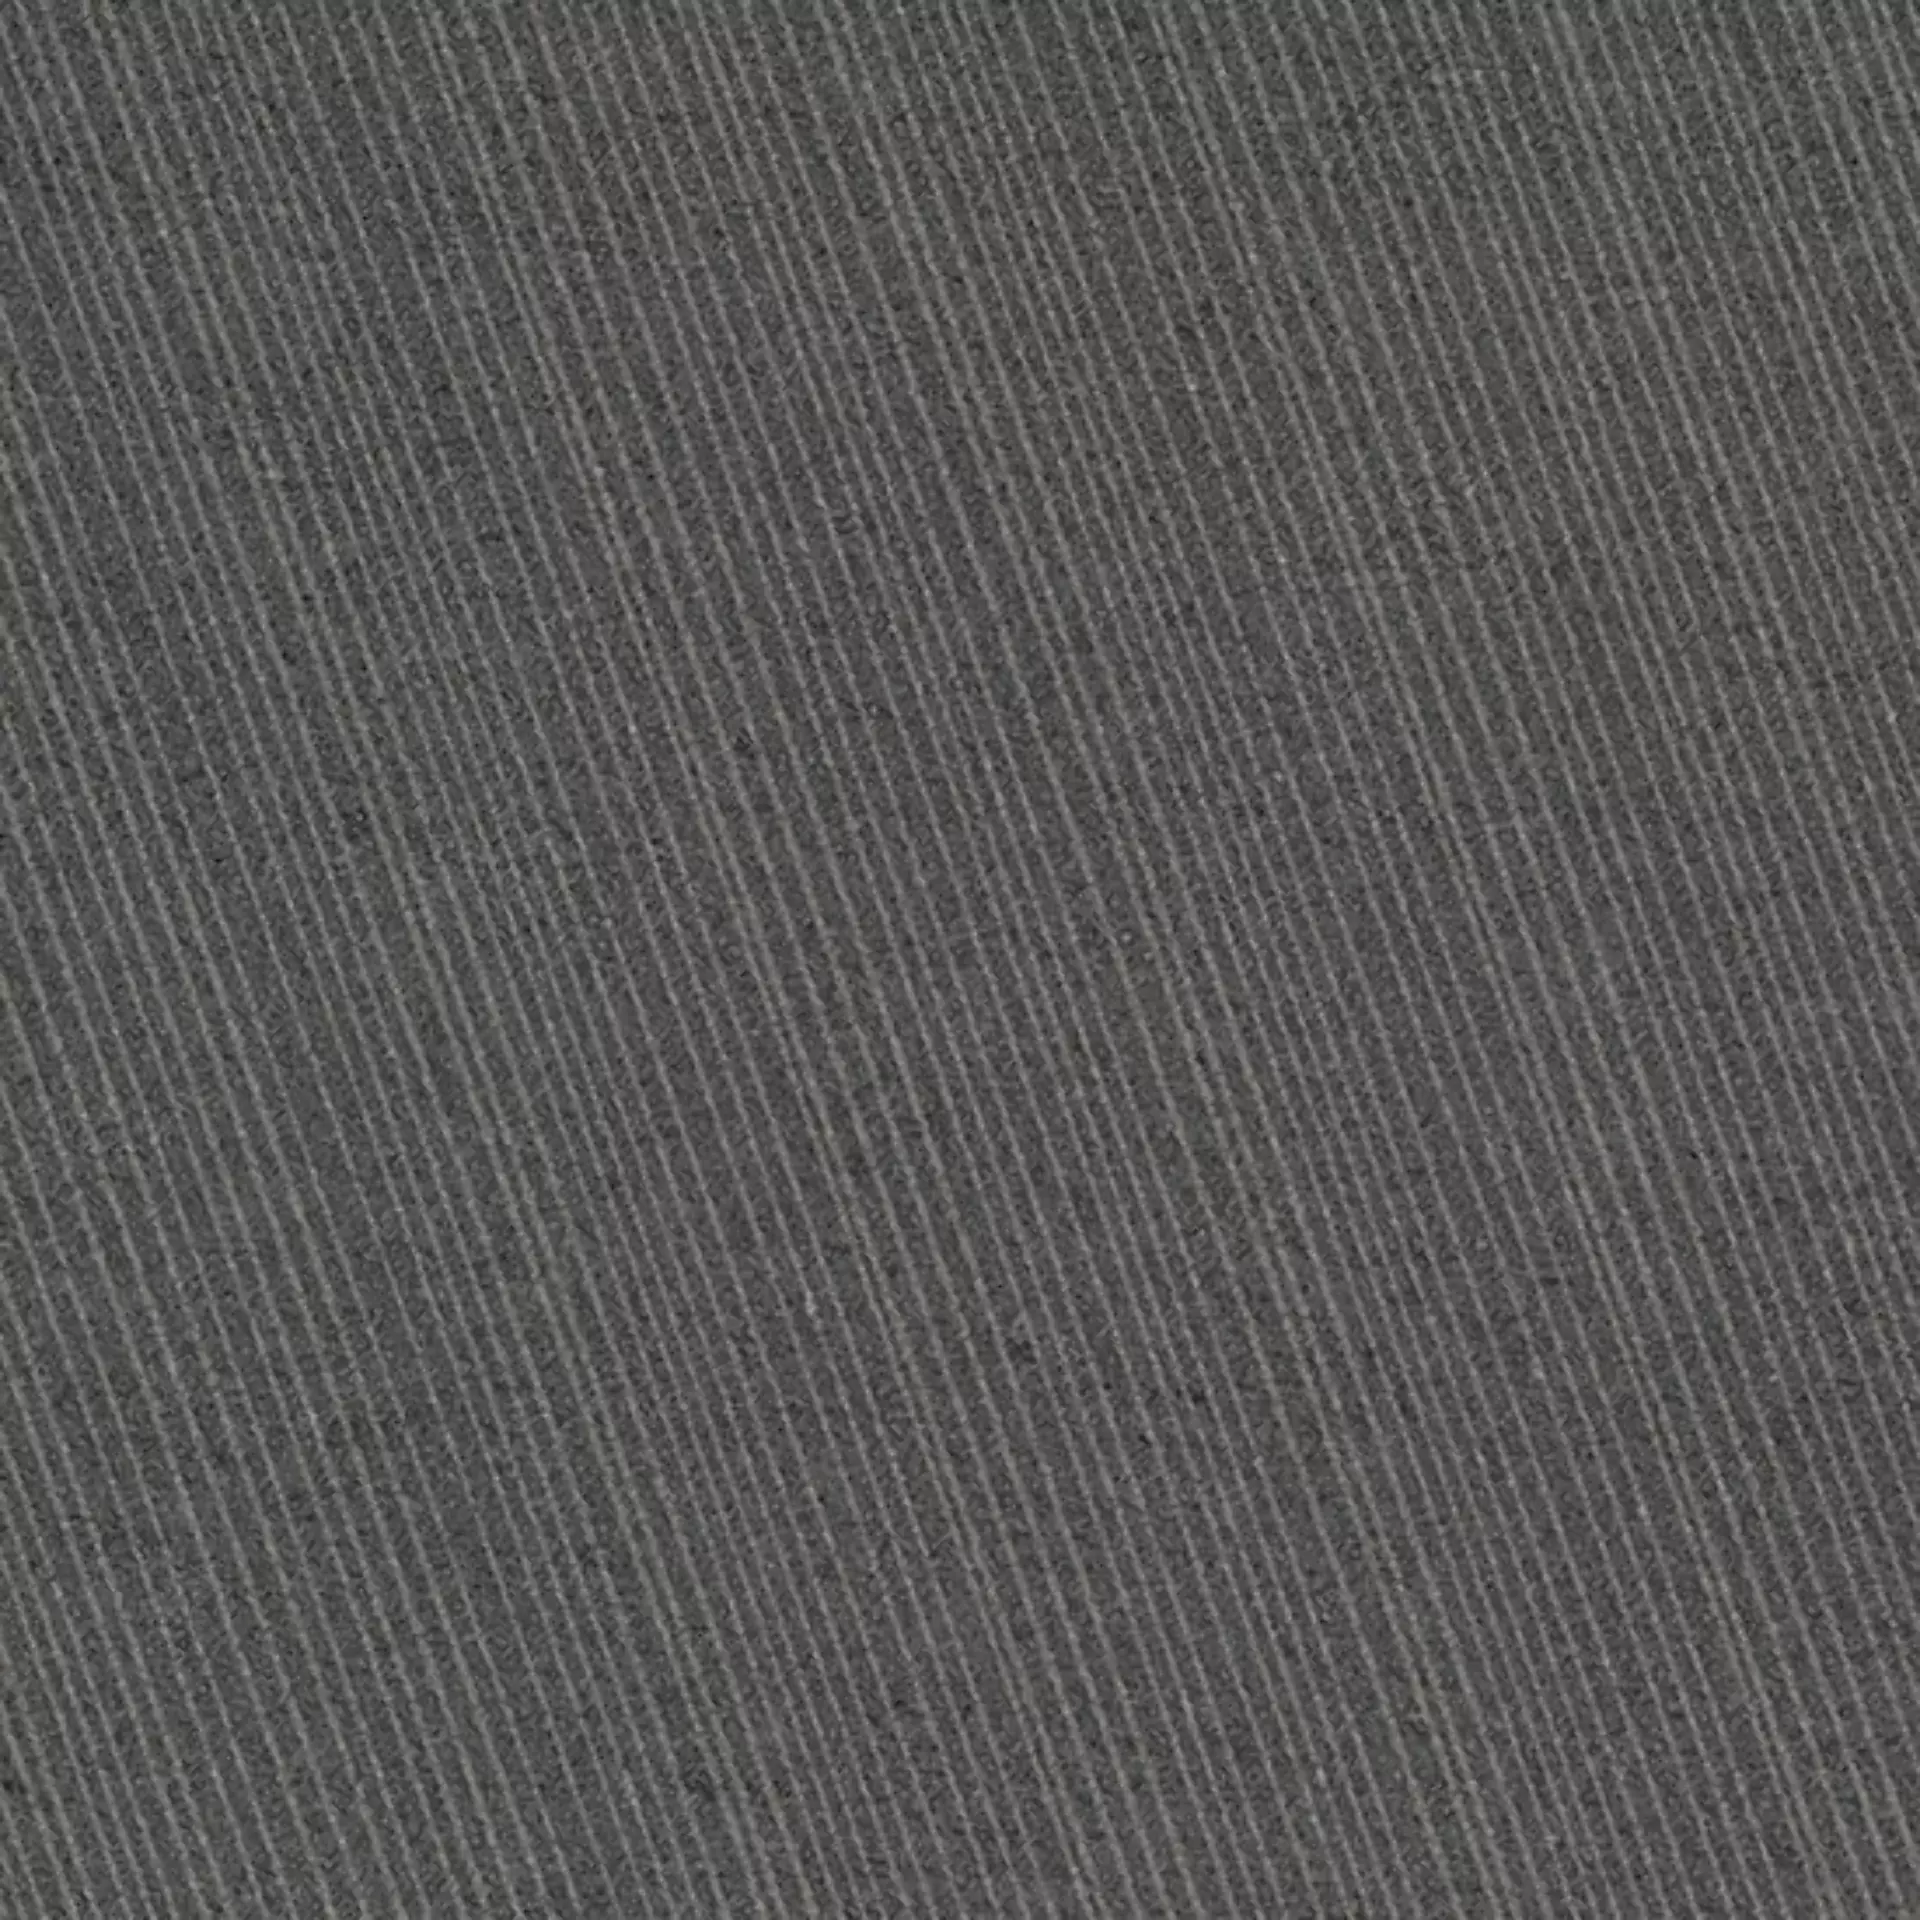 Coem Tweed Stone Black Naturale 0TW607R 60x60cm rectified 10mm